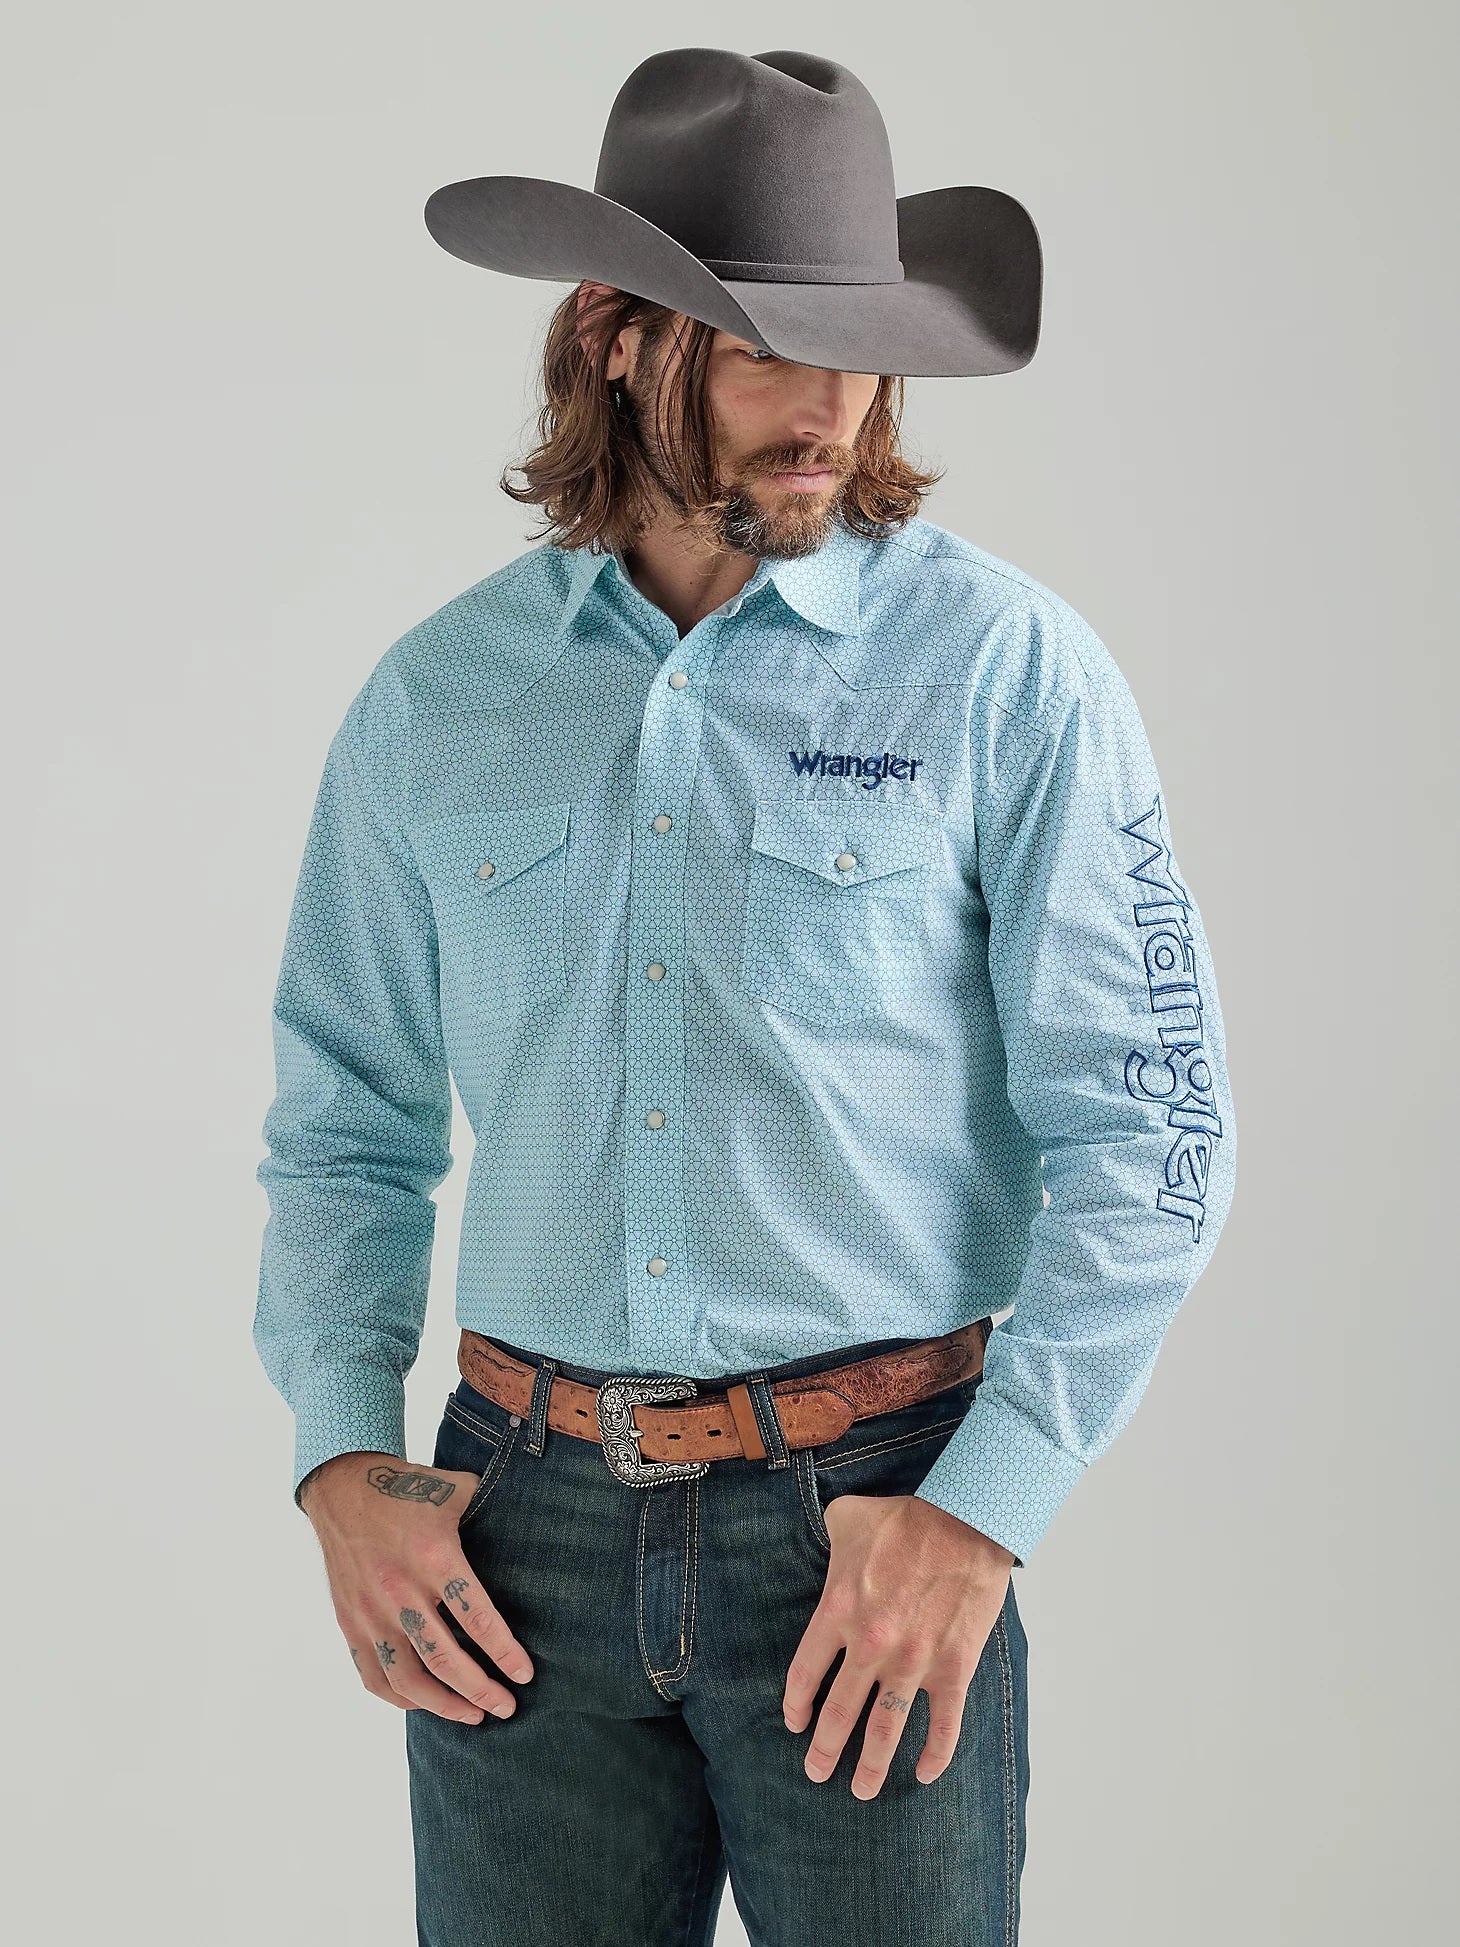 Men's Wrangler Logo Long Sleeve Western Snap Print Shirt in Turquoise White M